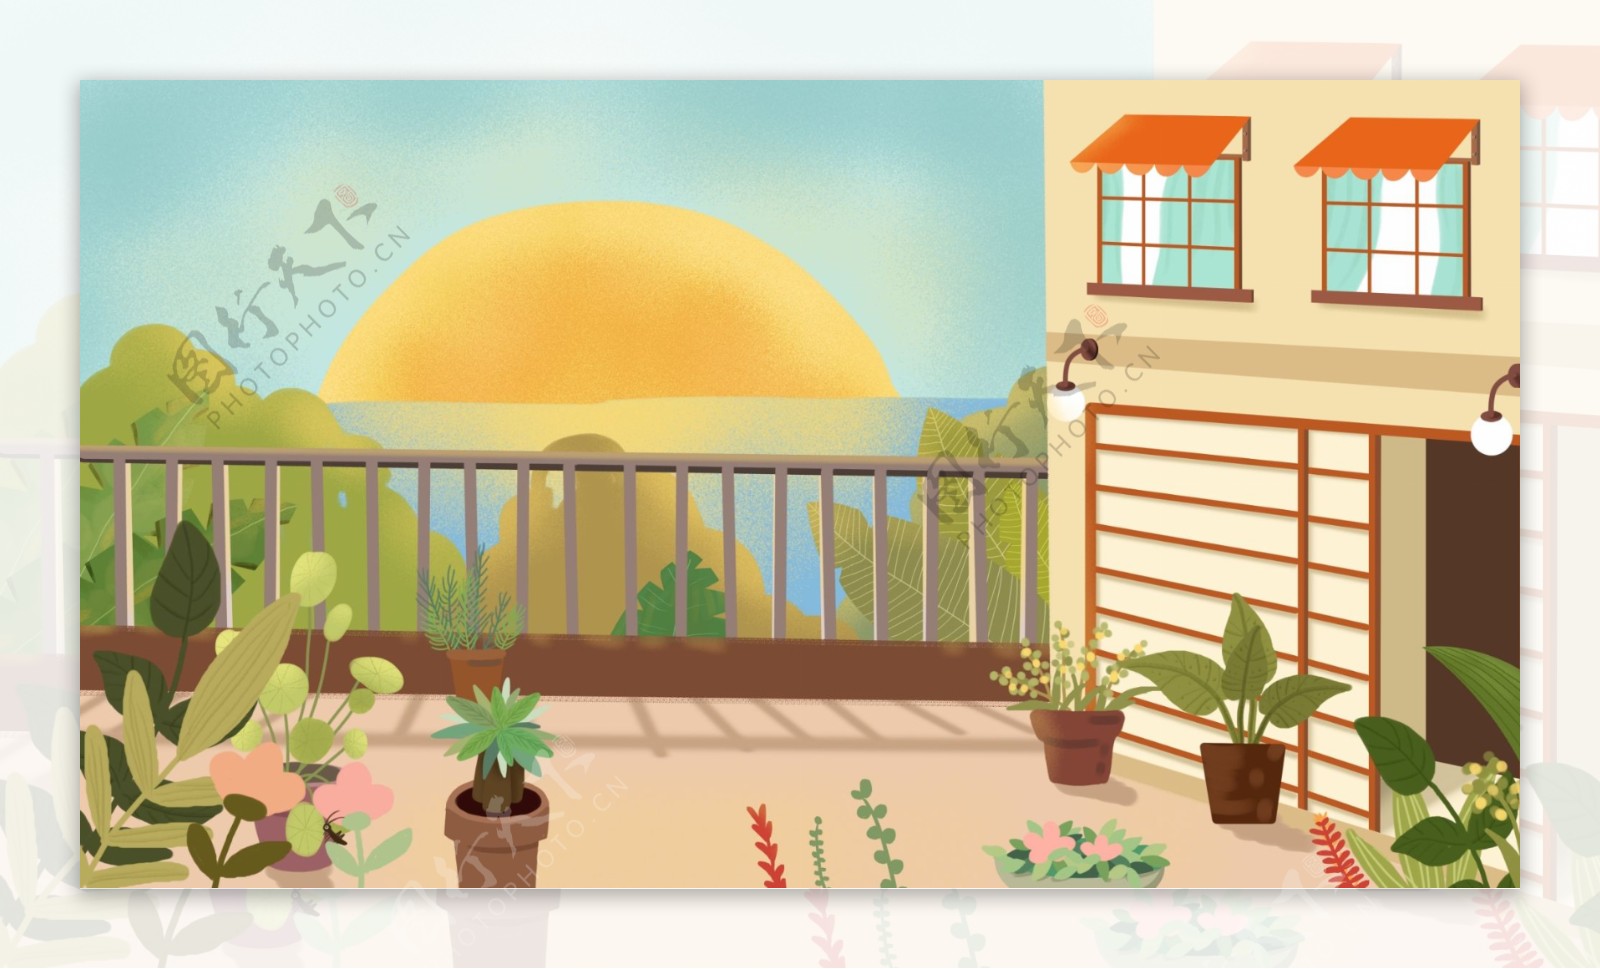 彩绘房子阳台露台日出背景设计